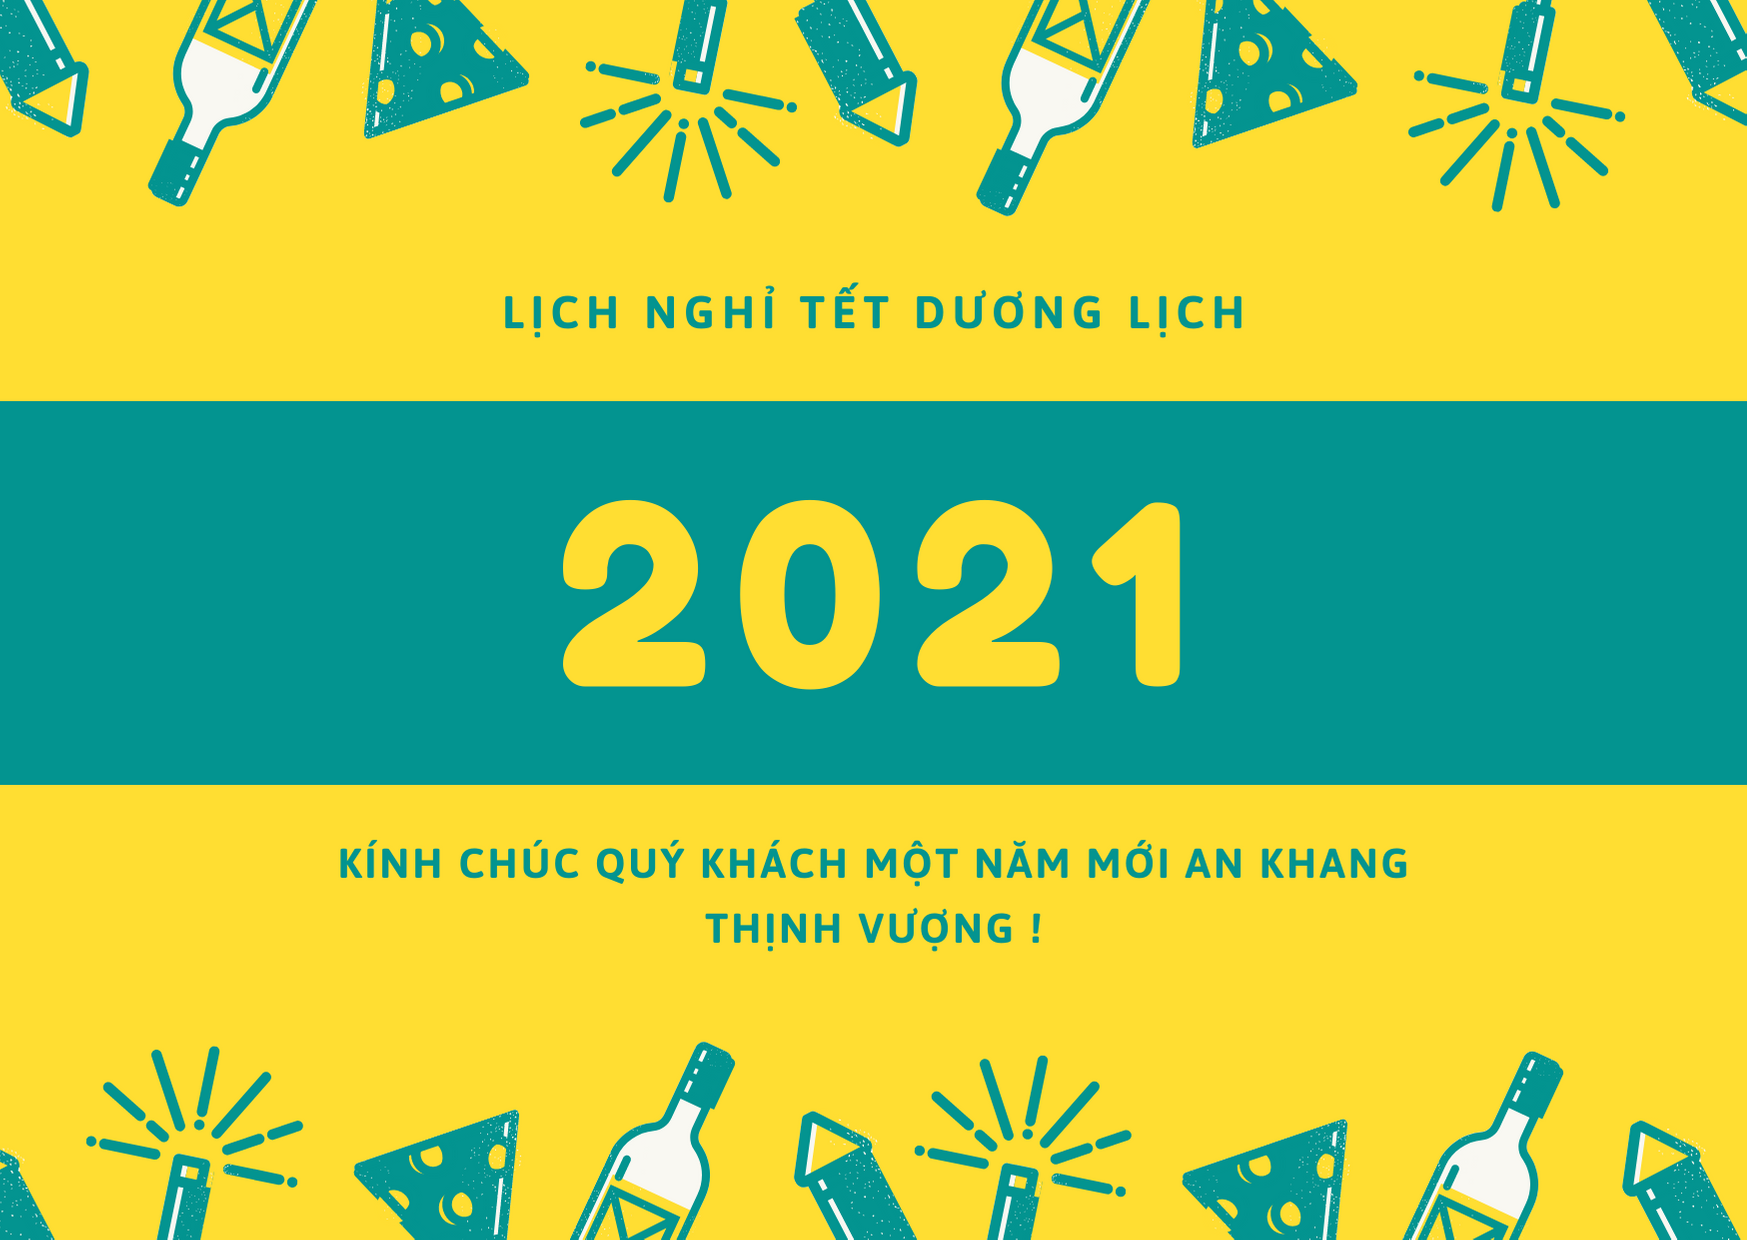 Anh Ngữ Happy School thông báo lịch nghỉ Tết Dương Lịch và chúc mừng năm mới 2021